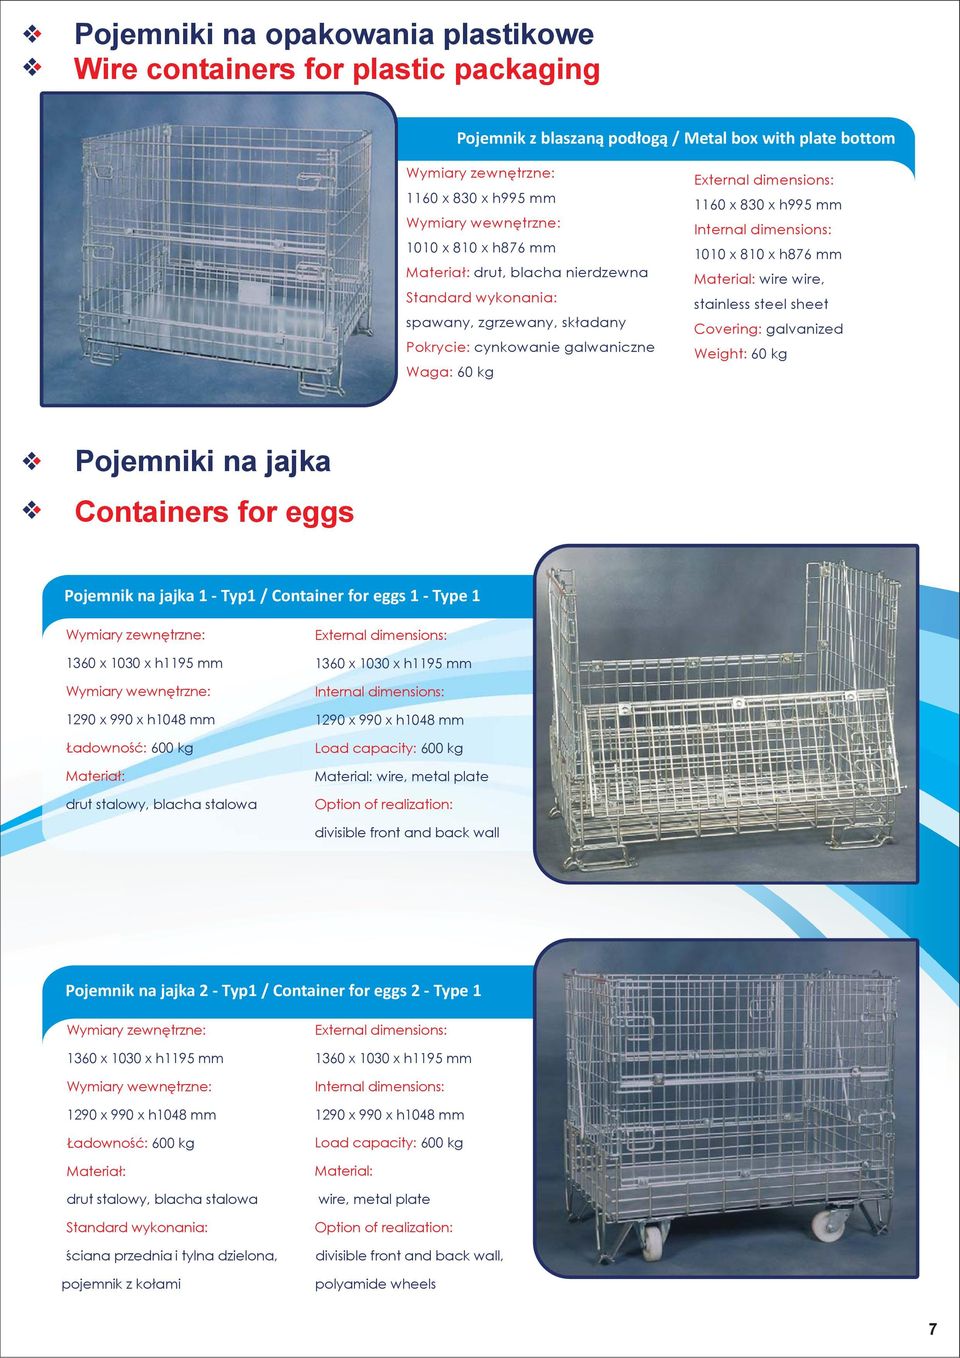 jajka Containers for eggs Pojemnik na jajka 1 - Typ1 / Container for eggs 1 - Type 1 1360 x 1030 x h1195 mm 1290 x 990 x h1048 mm Ładowność: 600 kg drut stalowy, blacha stalowa 1360 x 1030 x h1195 mm